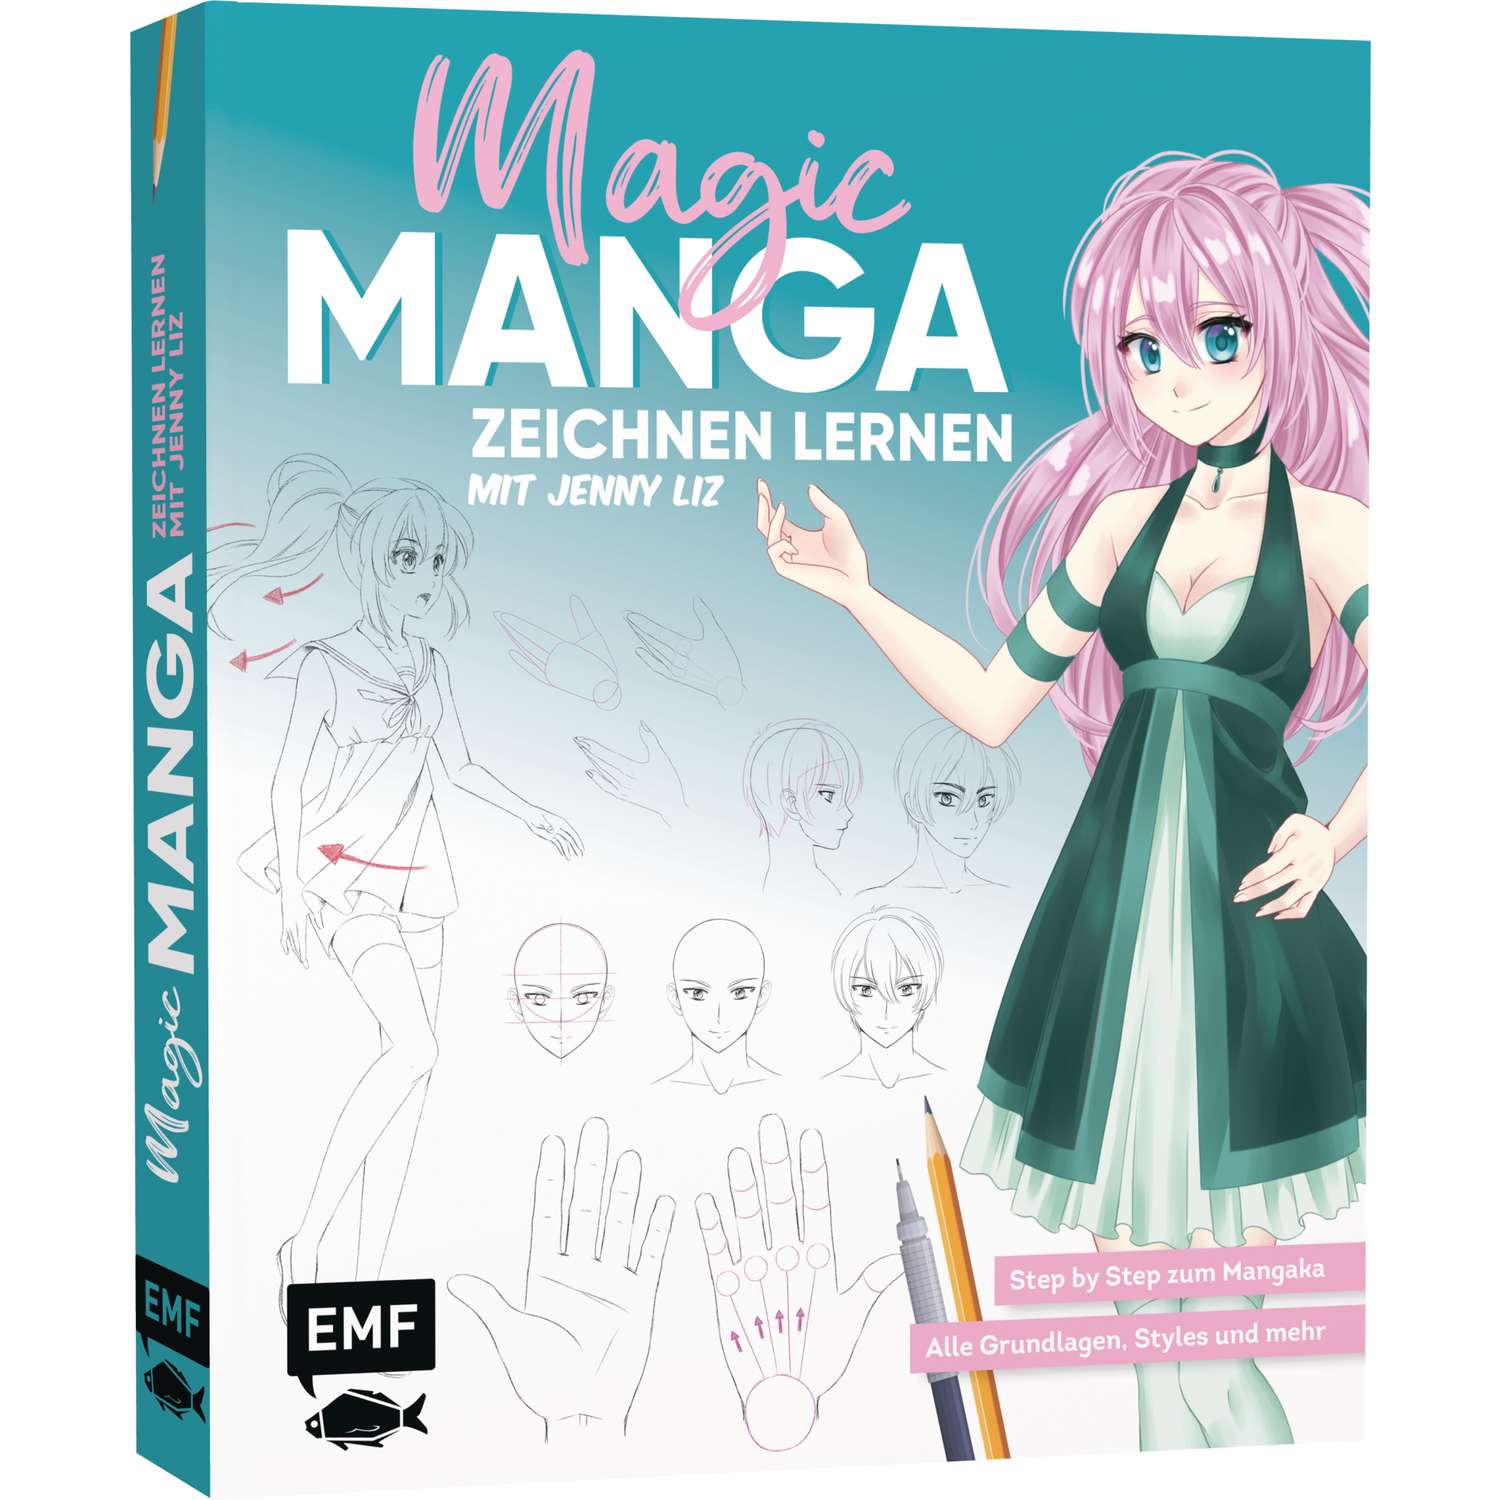 Manga zeichnen lernen: Material - Feder und Tusche